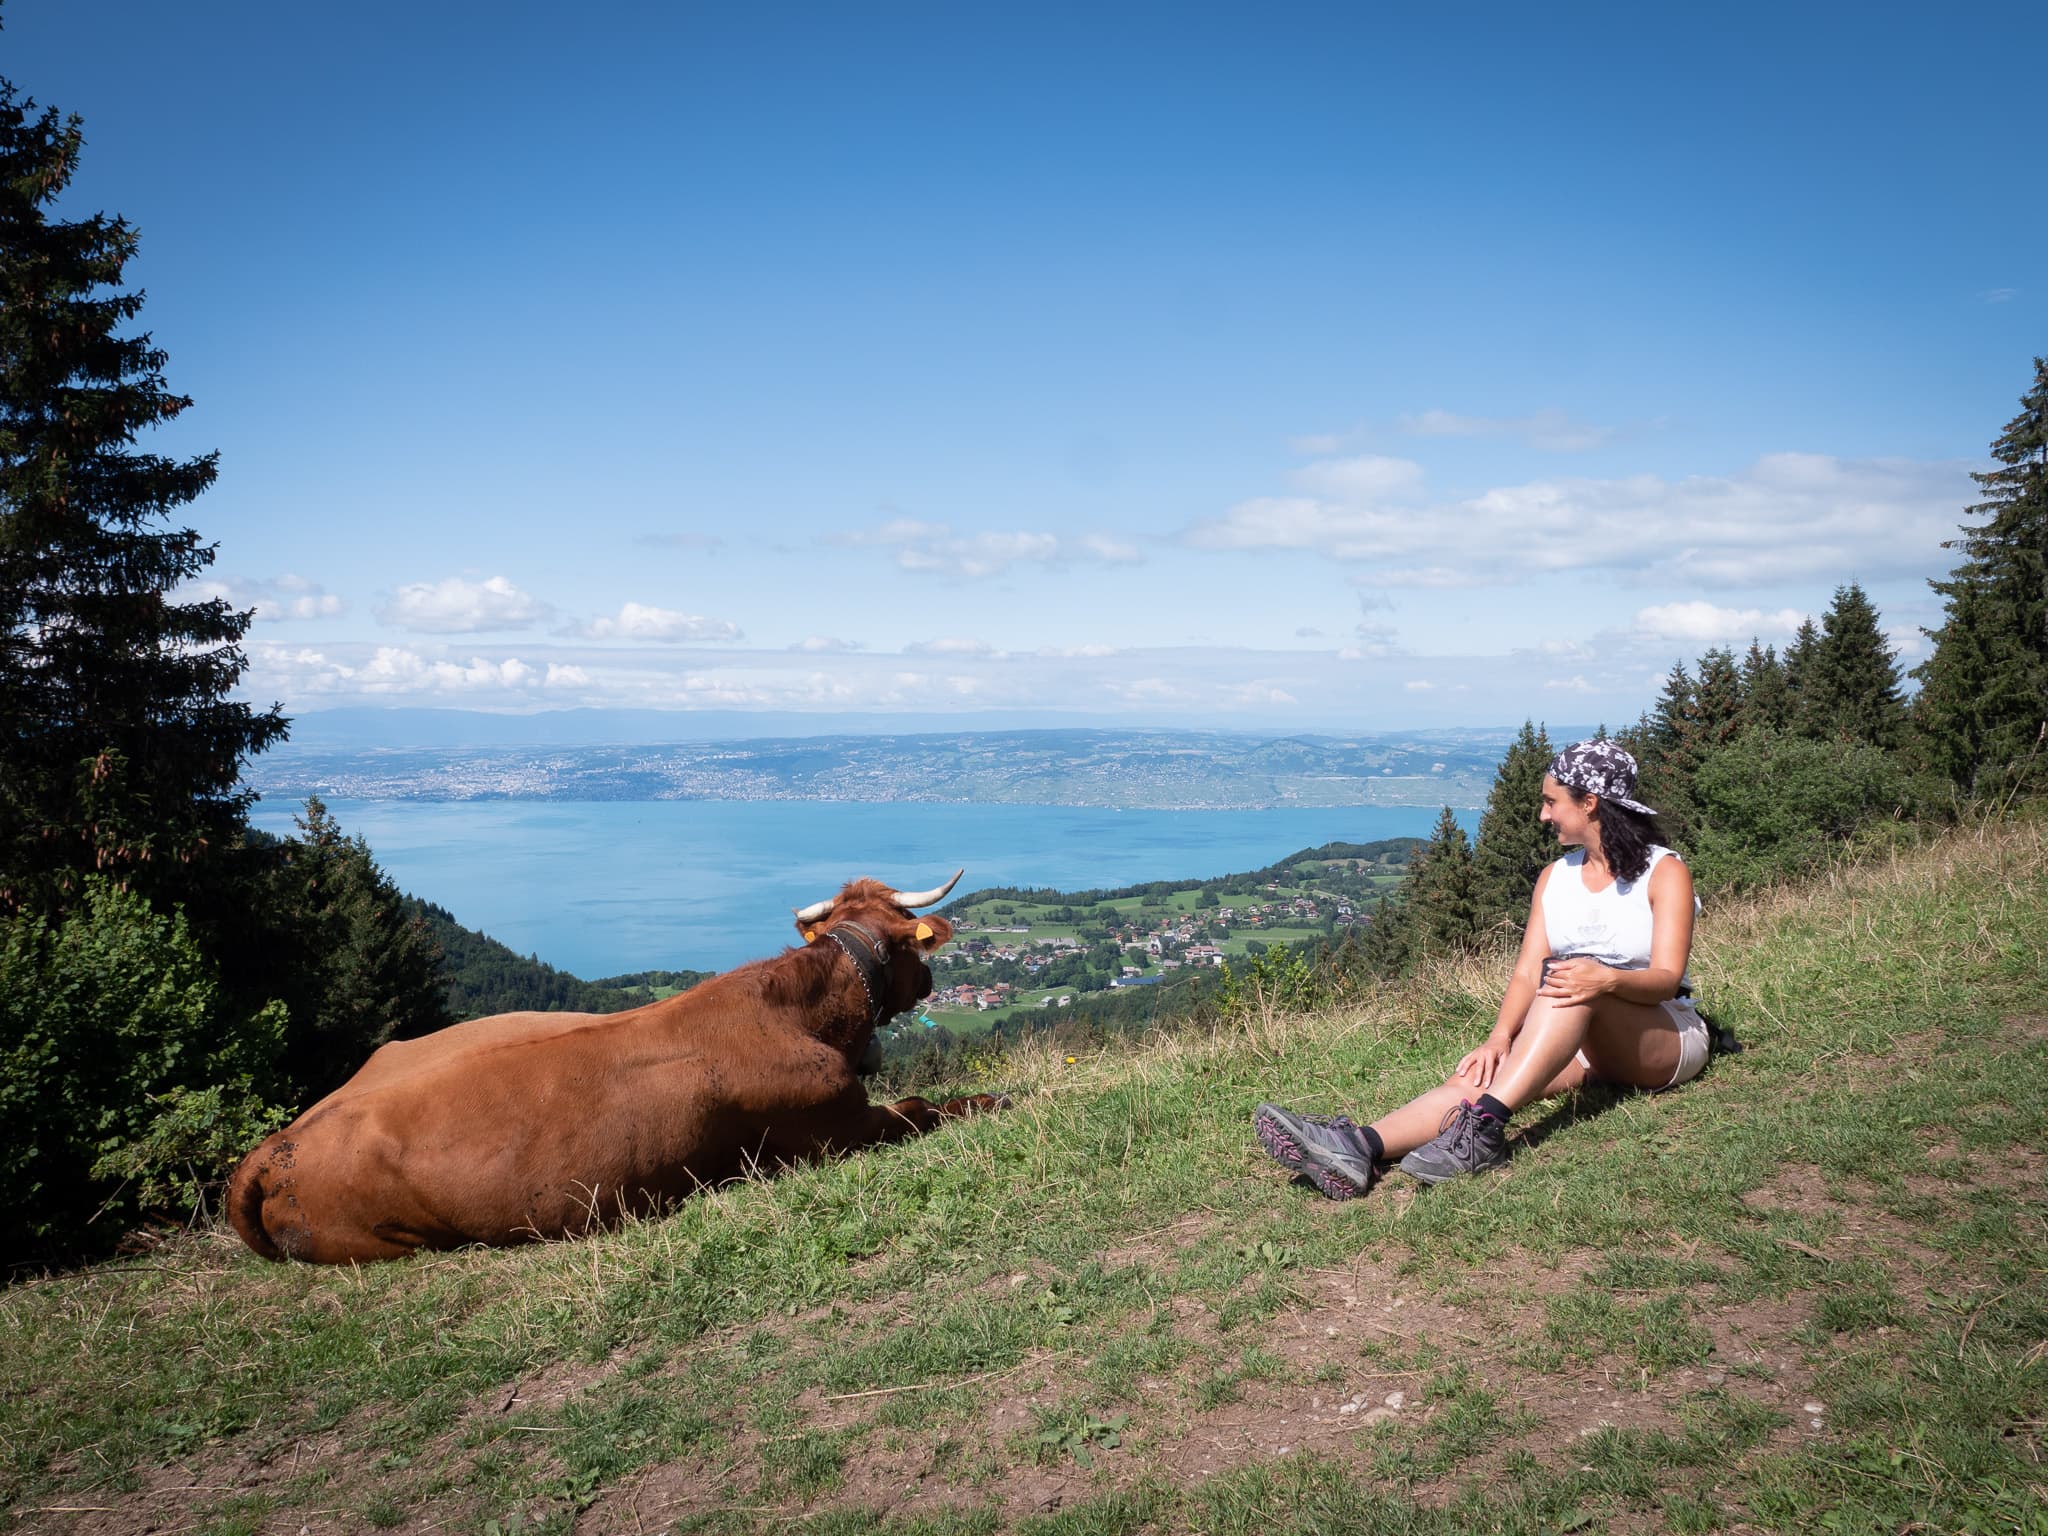 marion regardant une vache pendant une randonnee au lac leman